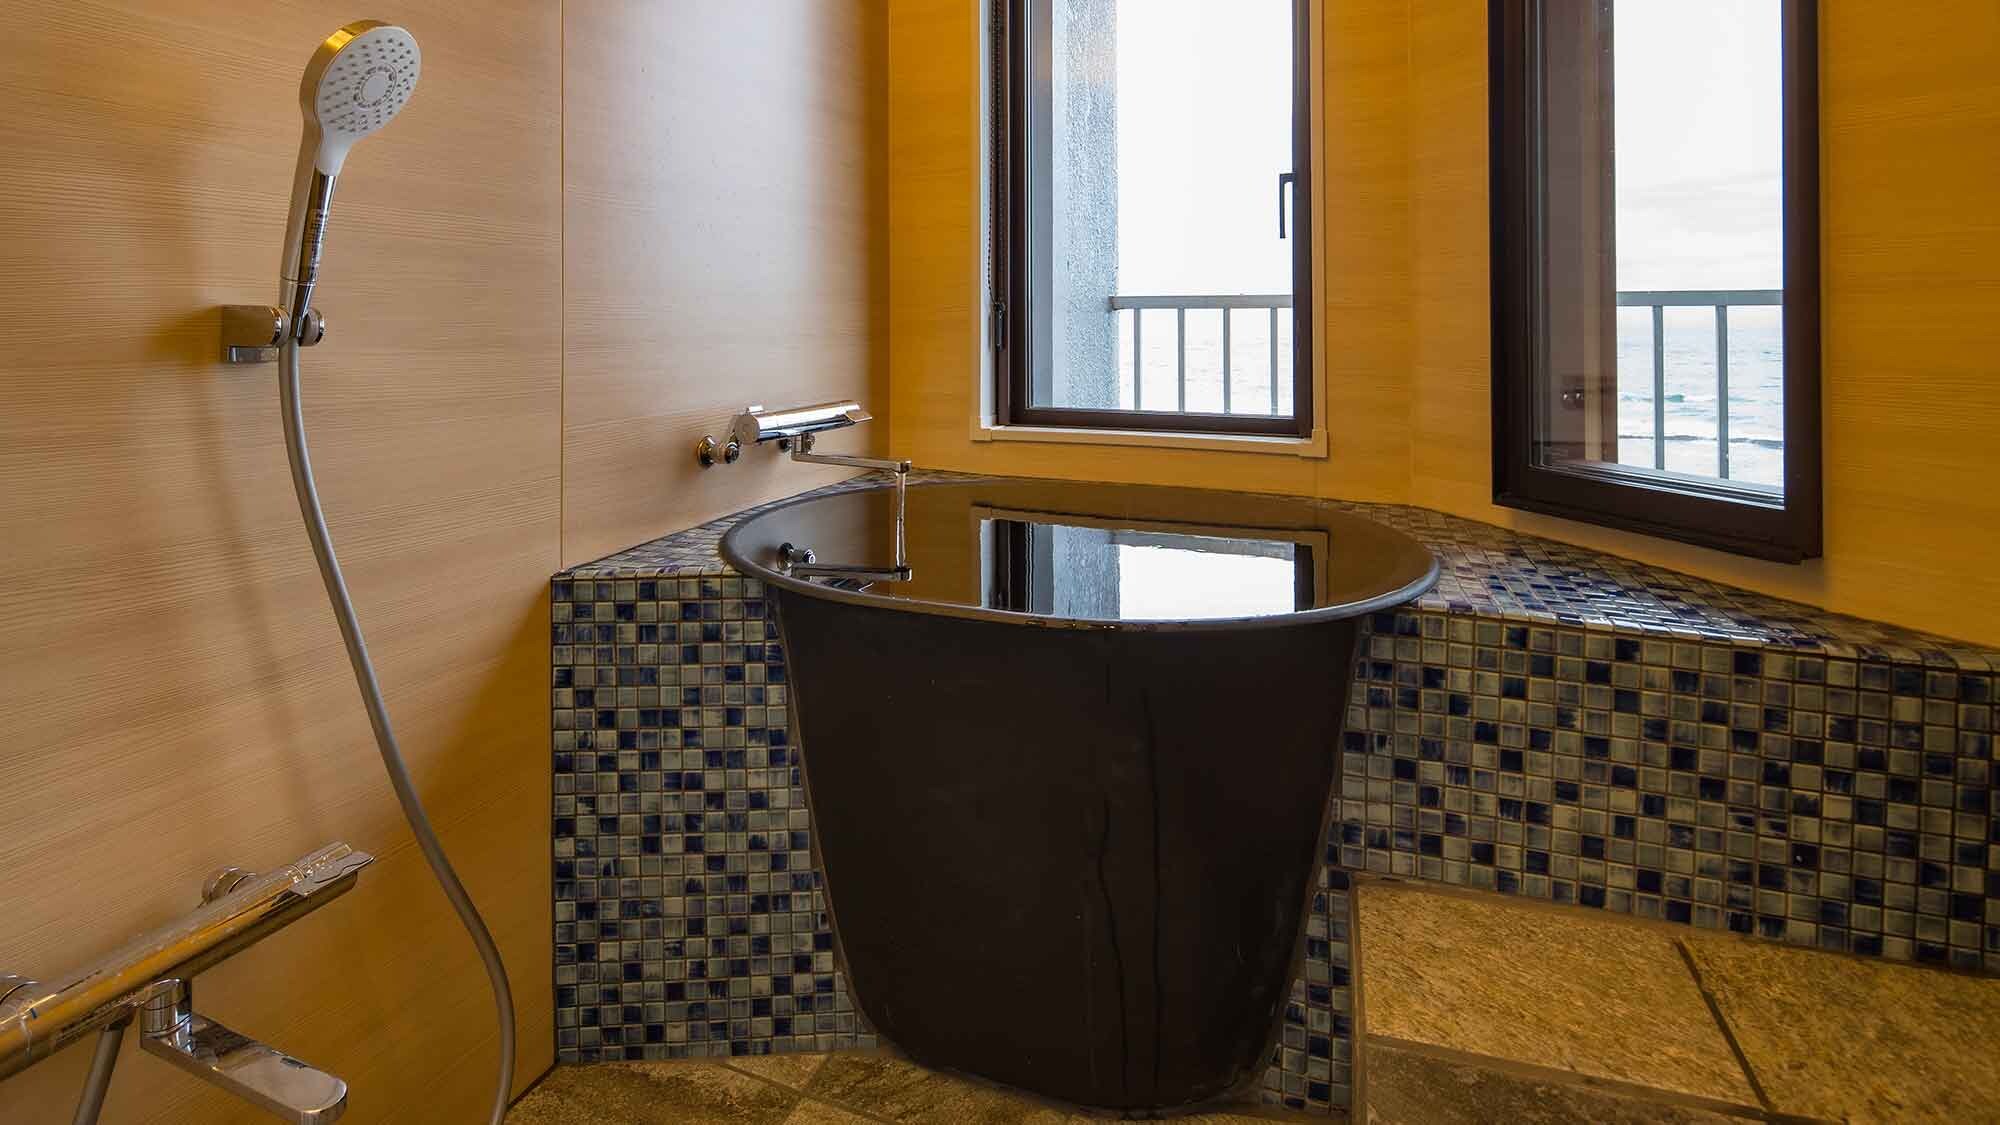 ・[ตัวอย่างห้องสไตล์ญี่ปุ่นที่มีอ่างอาบน้ำพร้อมวิว] ห้องนี้มีอ่างอาบน้ำพร้อมวิวทะเล